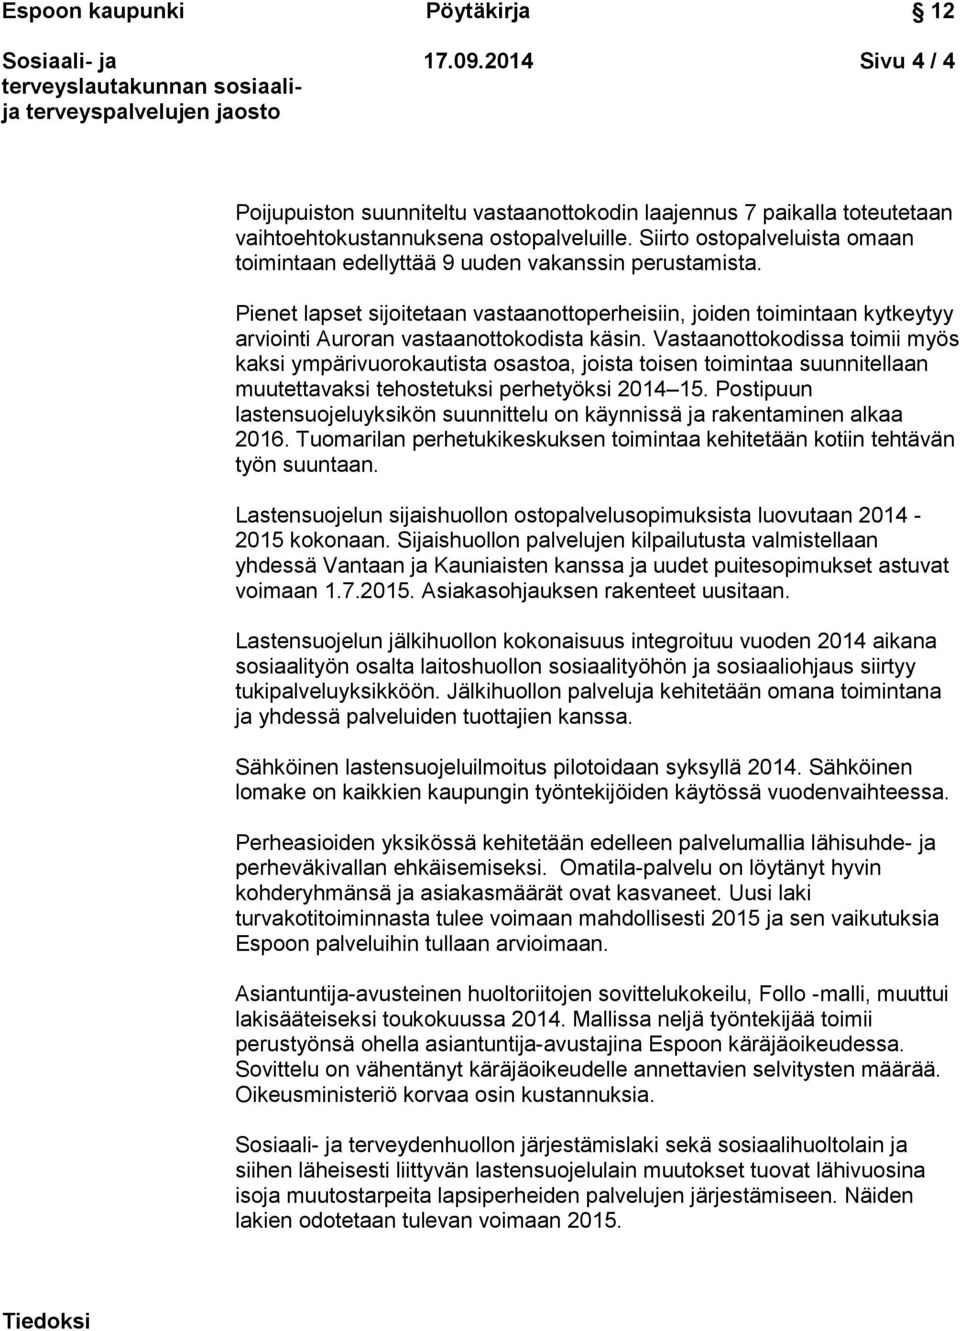 Espoon kaupunki Pöytäkirja Toimeentulotuen tilanne ja uudistukset sekä  lastensuojelupalvelujen palvelurakennemuutos - PDF Ilmainen lataus